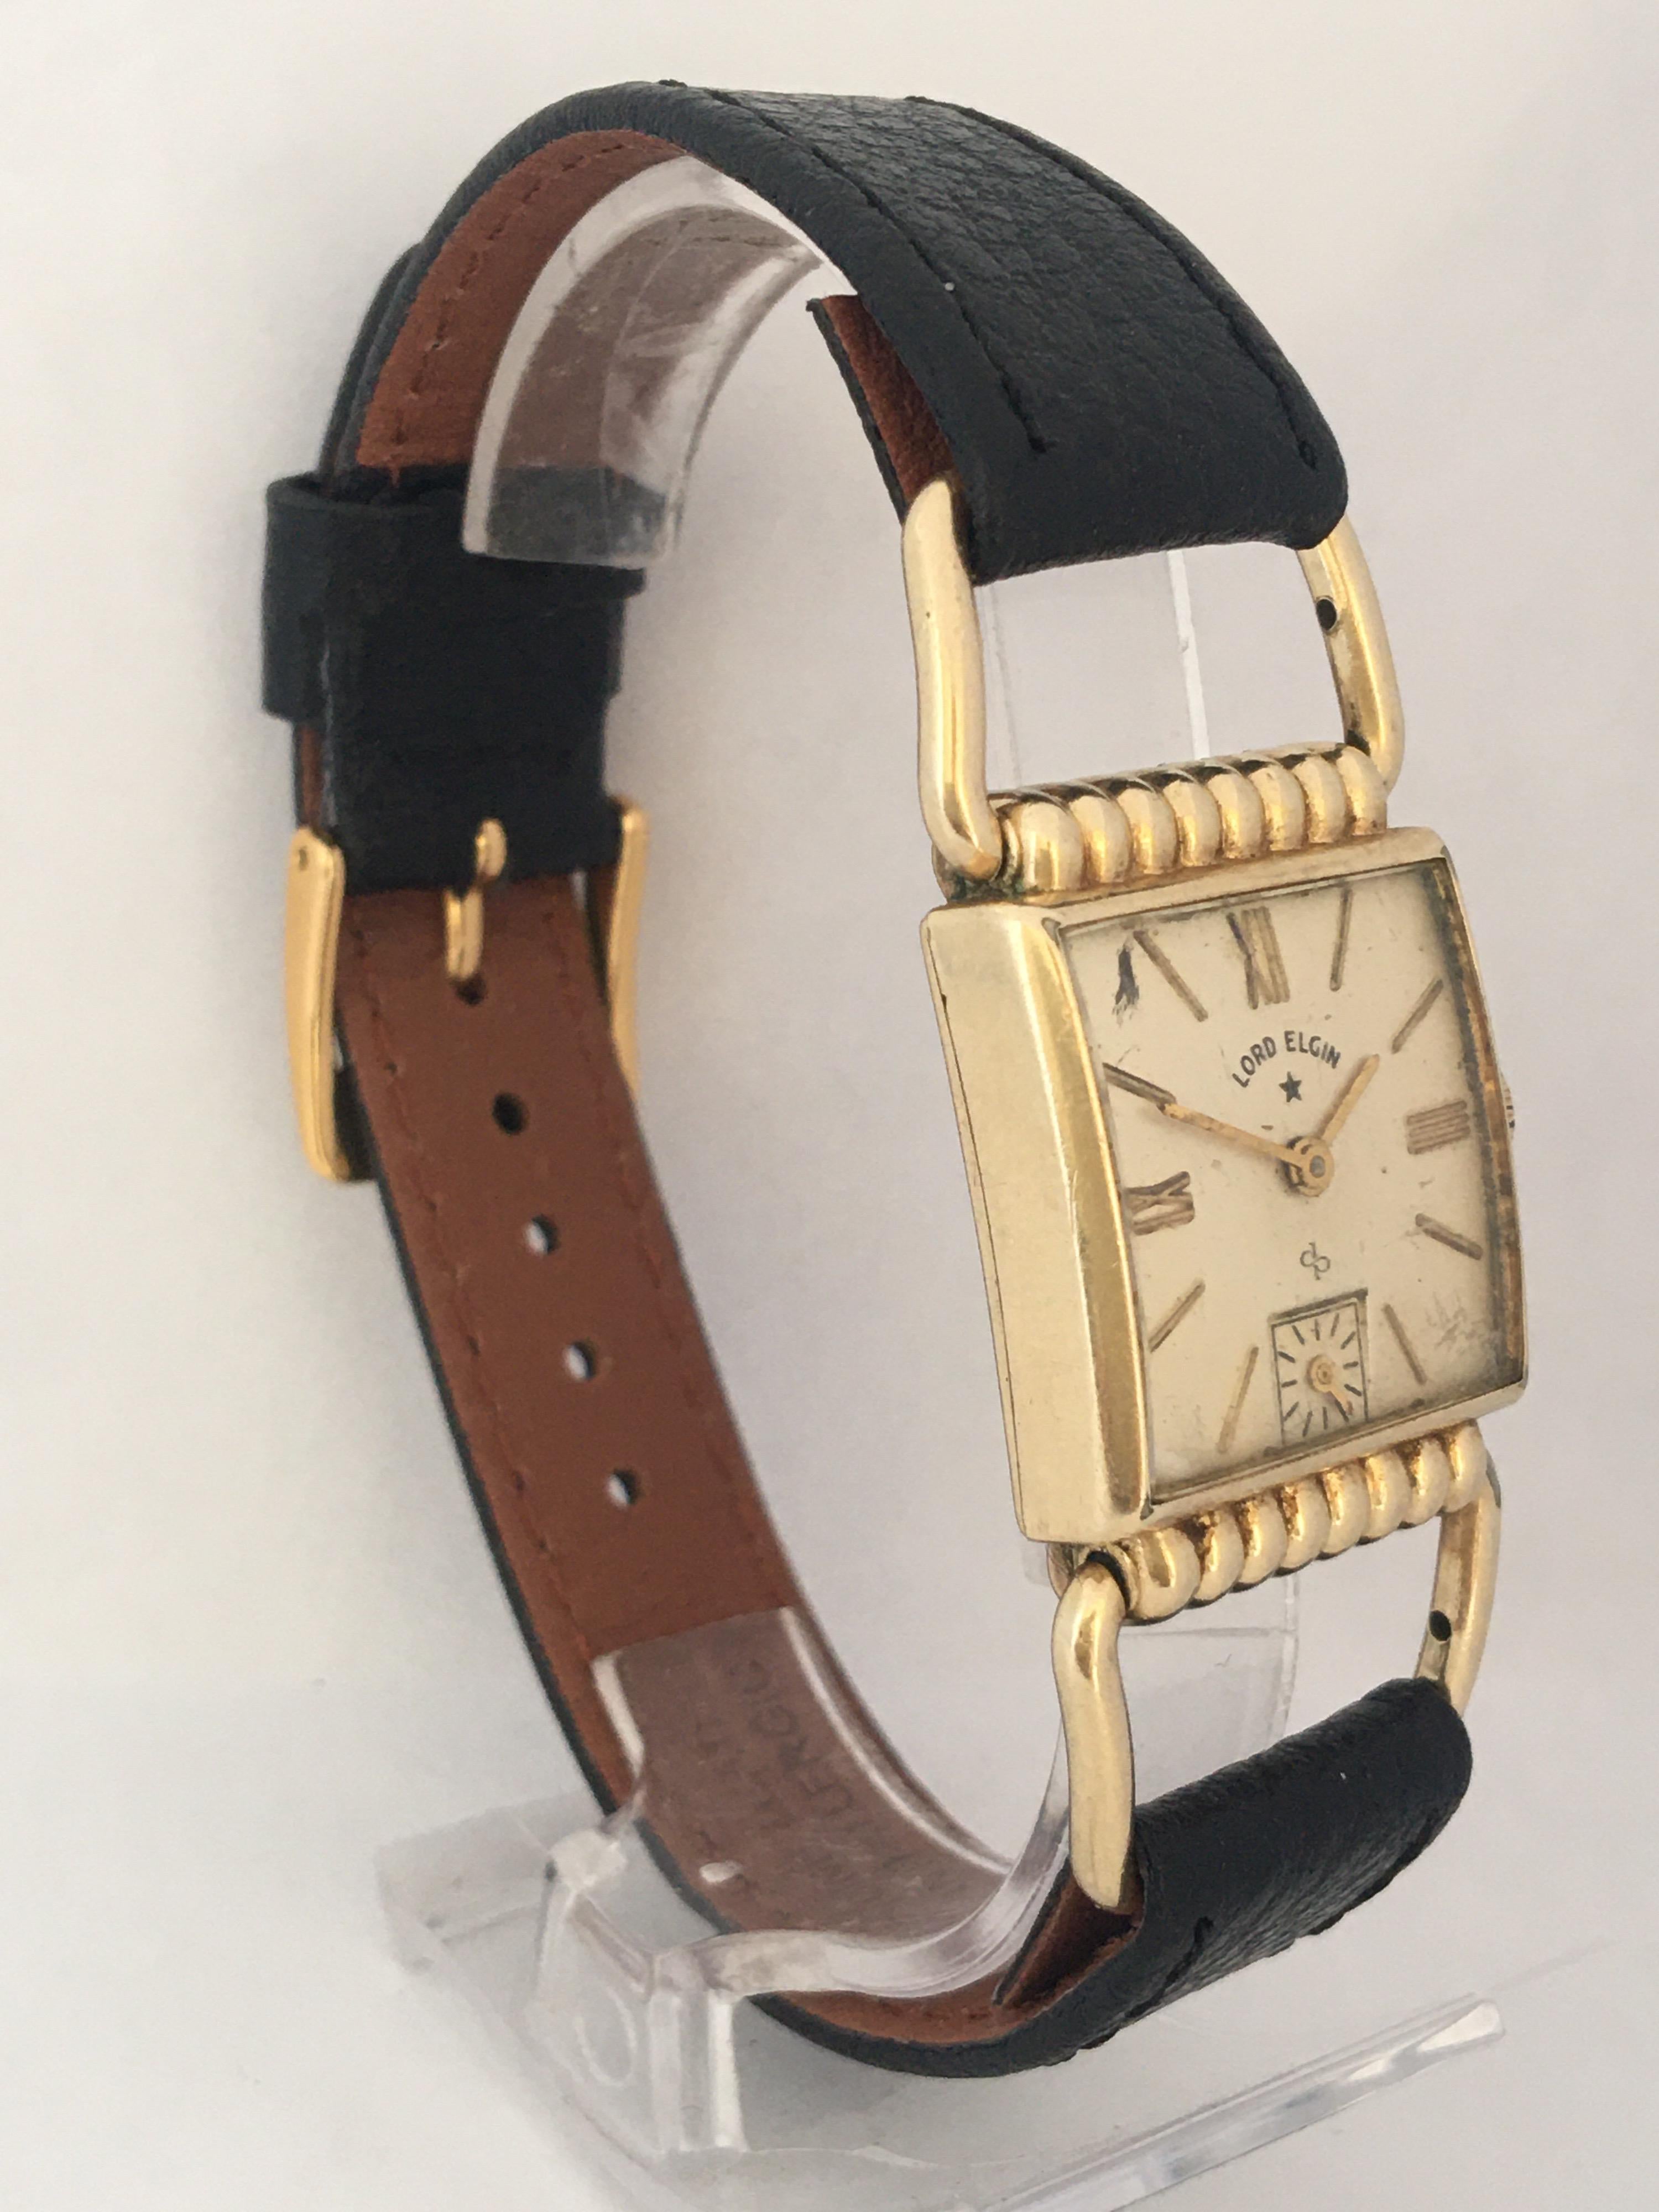 1940's elgin wrist watch